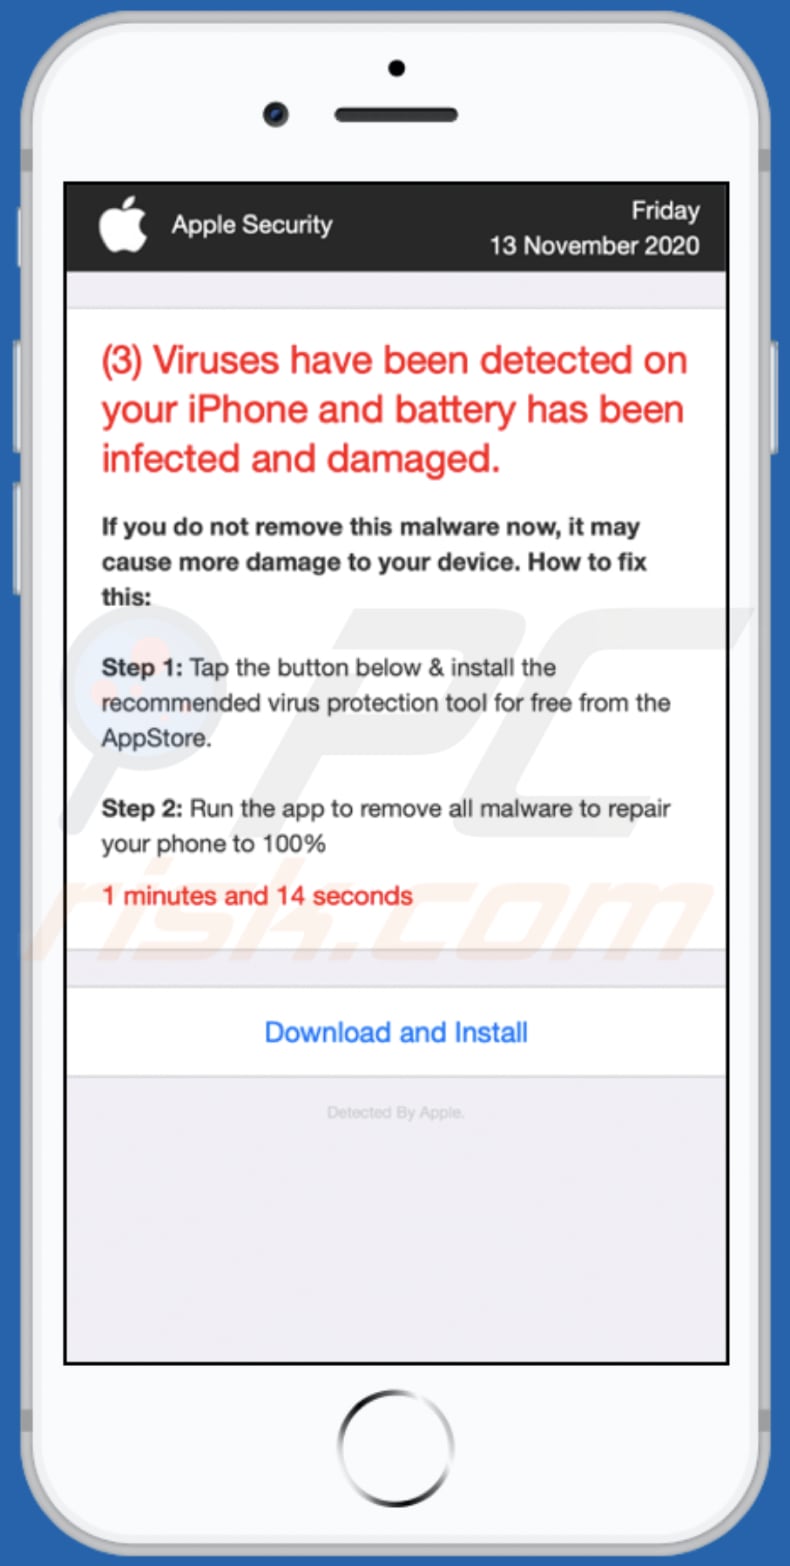 Hændelse, begivenhed Regnjakke det samme 3) Viruses Have Been Detected On Your IPhone POP-UP Scam (Mac) - Removal  steps, and macOS cleanup (updated)